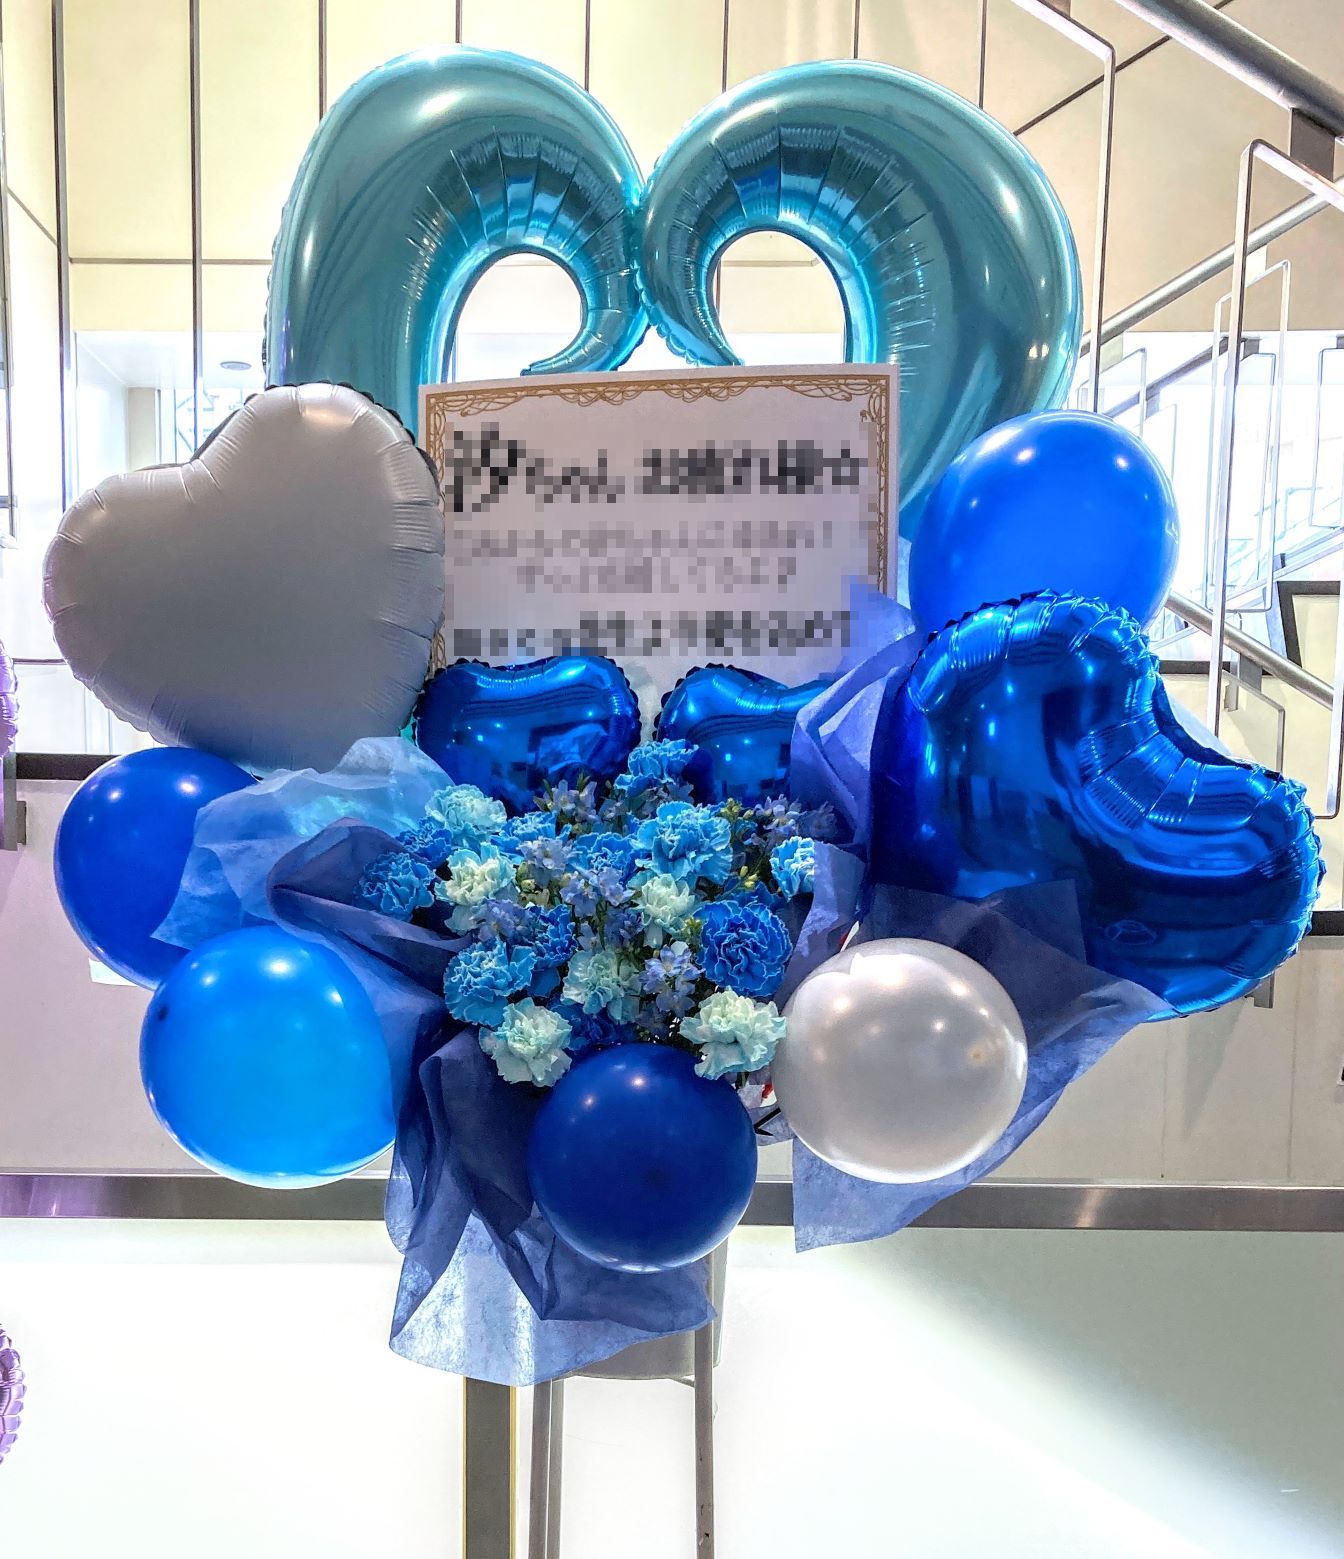 横浜ミントホールへ青系バルーンスタンド花を配達しました。【横浜花屋の花束・スタンド花・胡蝶蘭・バルーン・アレンジメント配達事例1090】